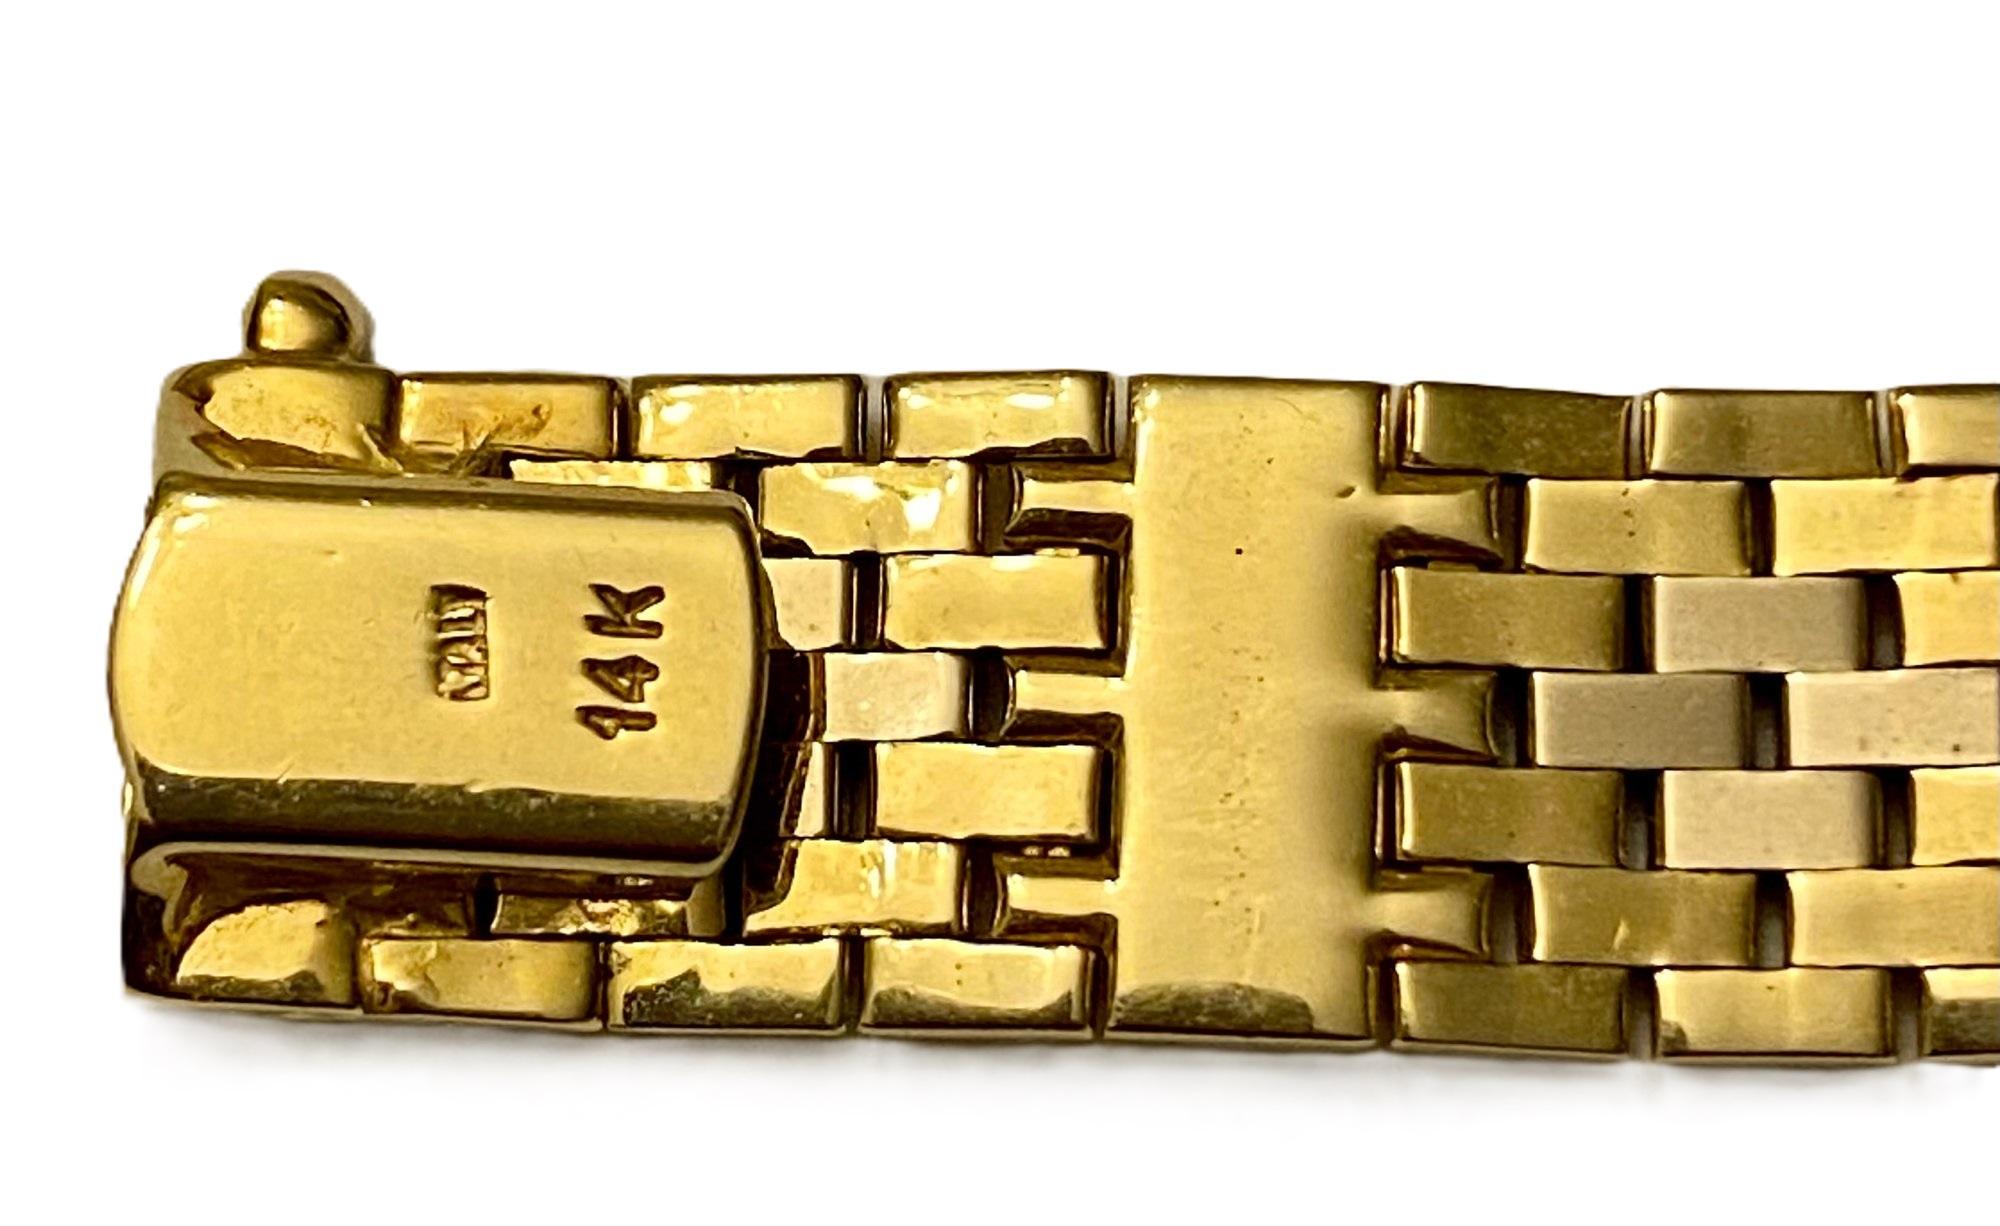 Das ist ein sehr elegantes und reichhaltig aussehendes Armband.  Sie ist aus feinstem italienischen Gold gefertigt.  Es fühlt sich einfach glatt und seidig an.   Es ist 14k Gelbgold und misst 7,25 Zoll lang und .45 Zoll breit.  Es ist schön flexibel